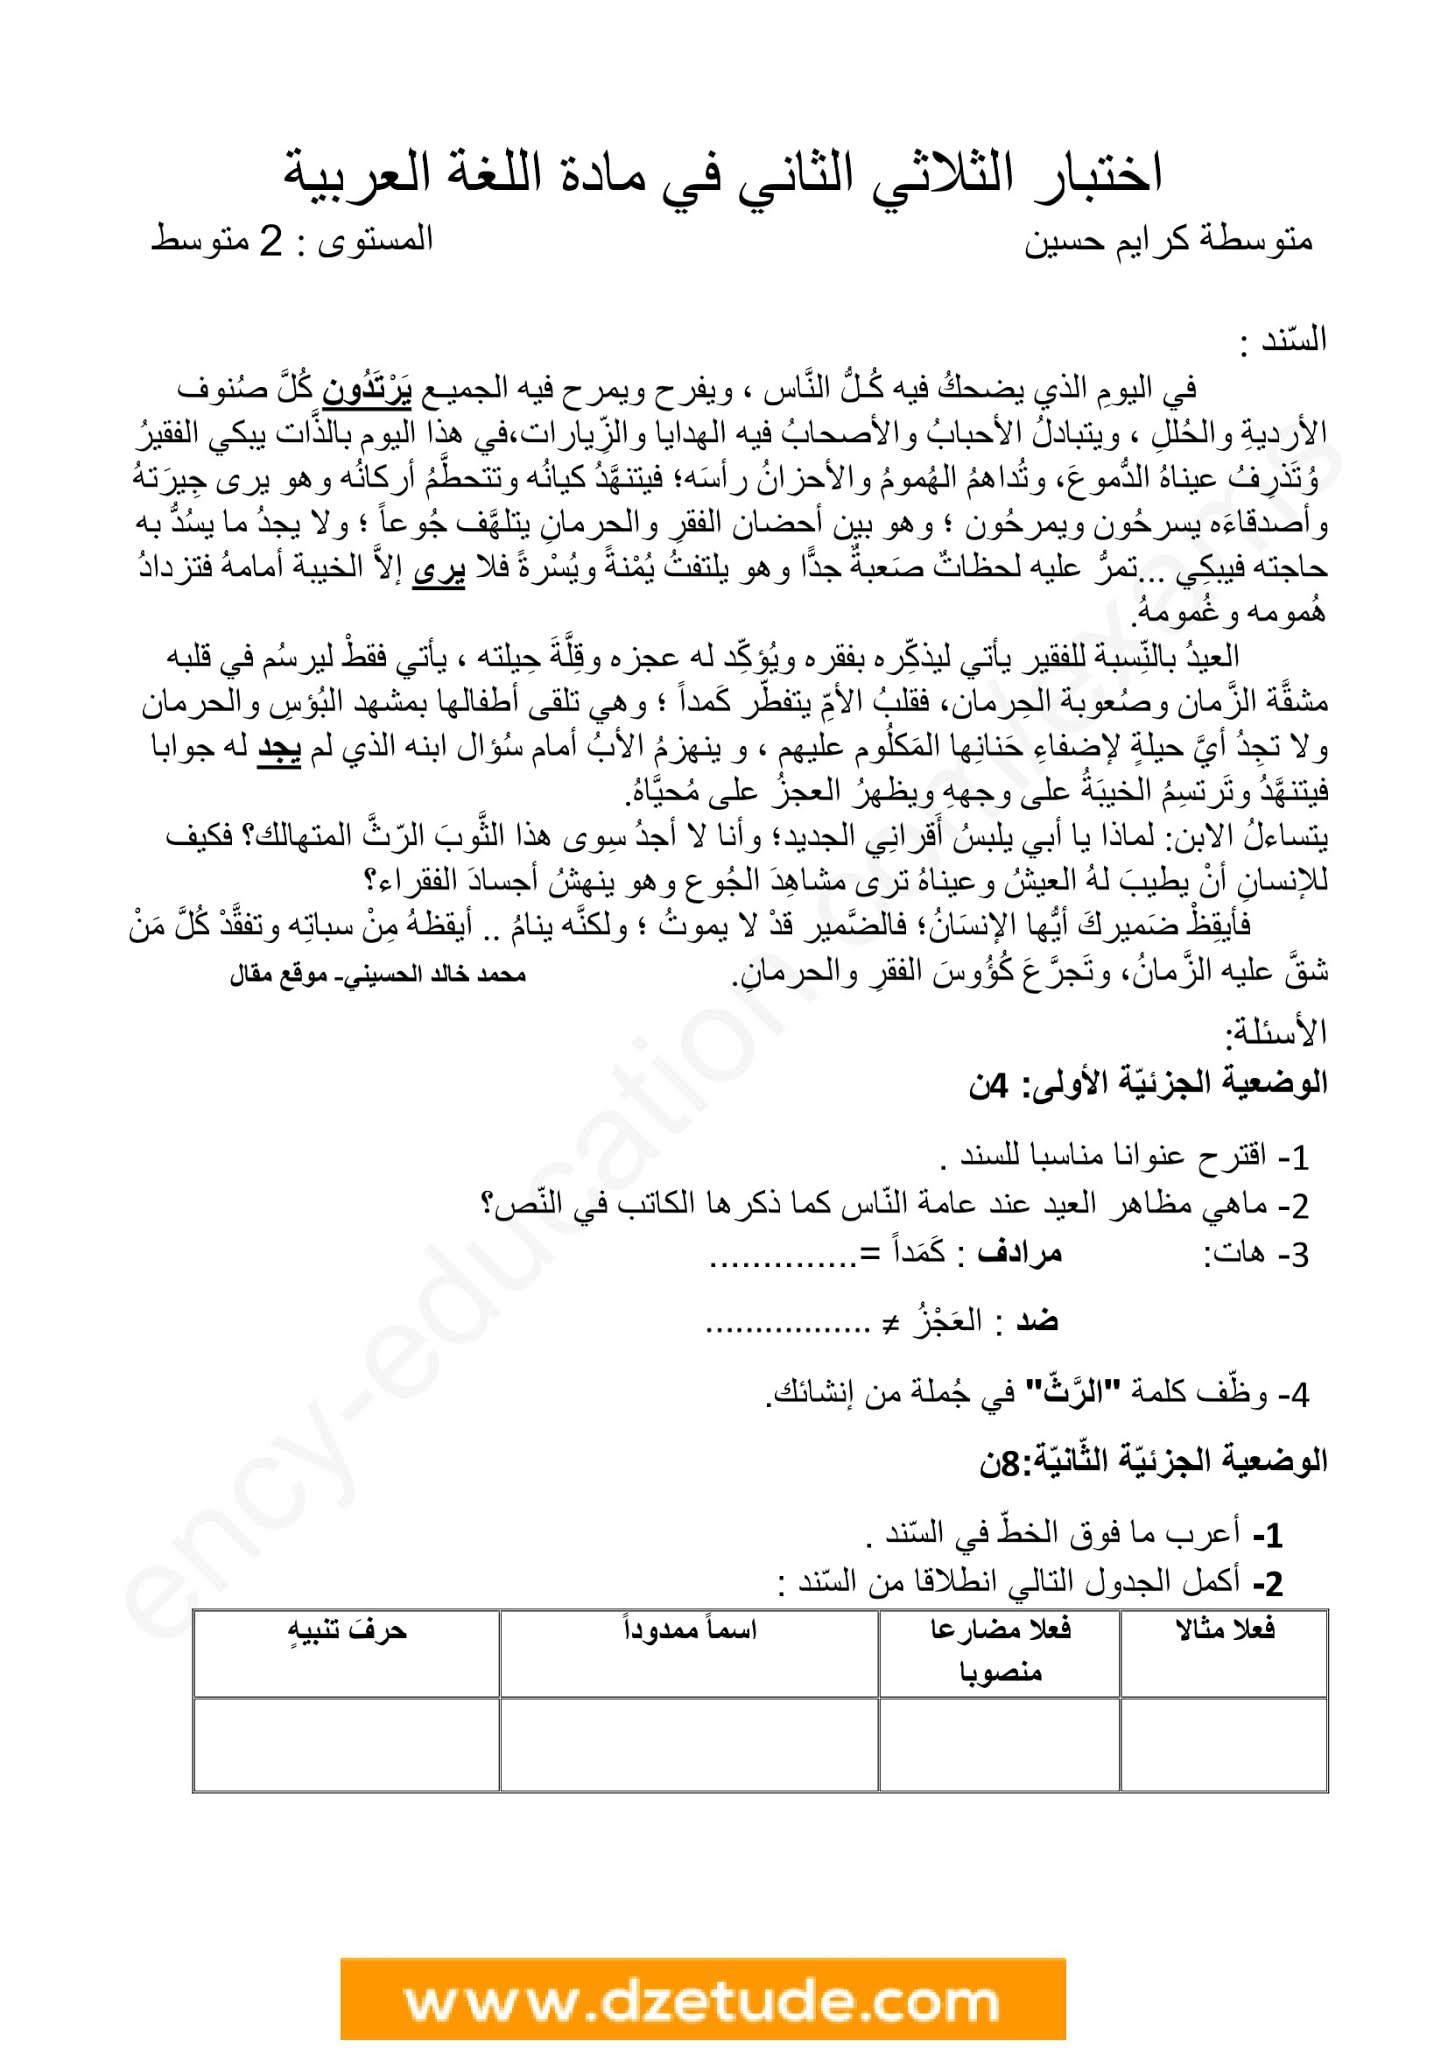 إختبار اللغة العربية الفصل الثاني للسنة الثانية متوسط - الجيل الثاني نموذج 8